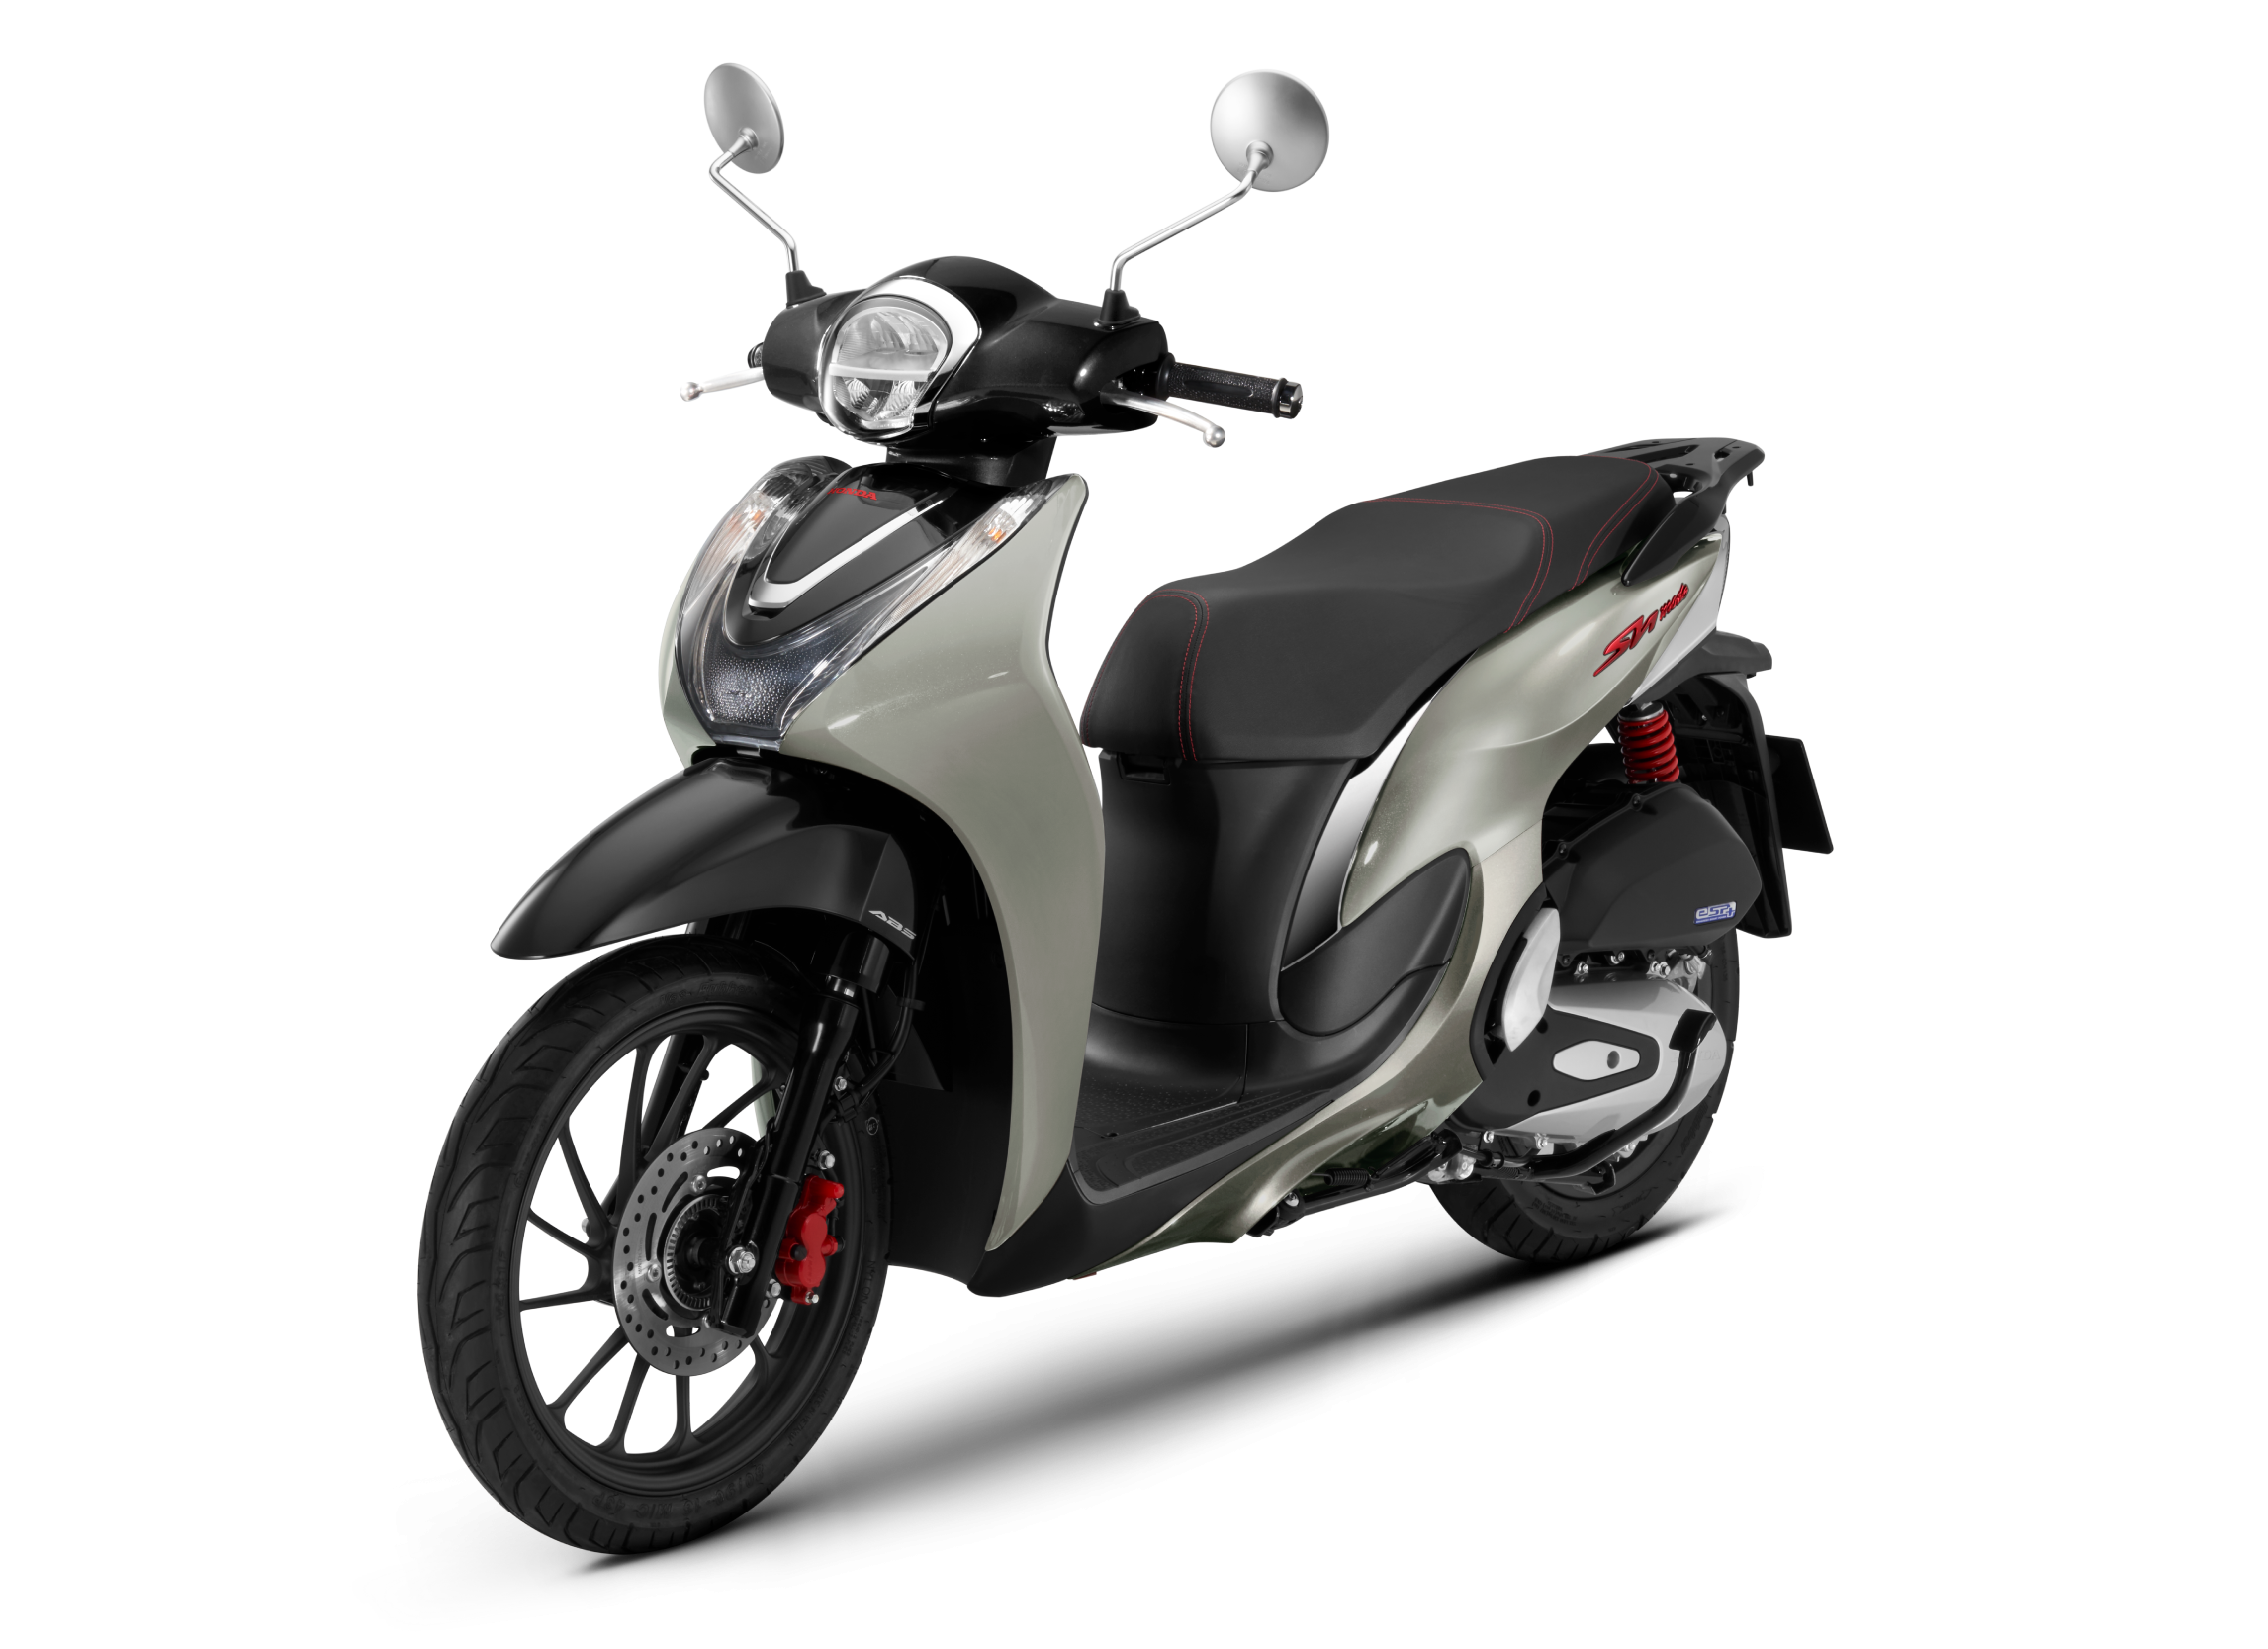 SH mode 125cc: Bạn là người yêu thích sự tiện lợi và năng động? Honda SH Mode 125cc sẽ là sự lựa chọn hoàn hảo dành cho bạn. Hãy ngắm nhìn chi tiết về thiết kế cùng các tính năng ưu việt của mẫu xe này qua hình ảnh chất lượng cao.